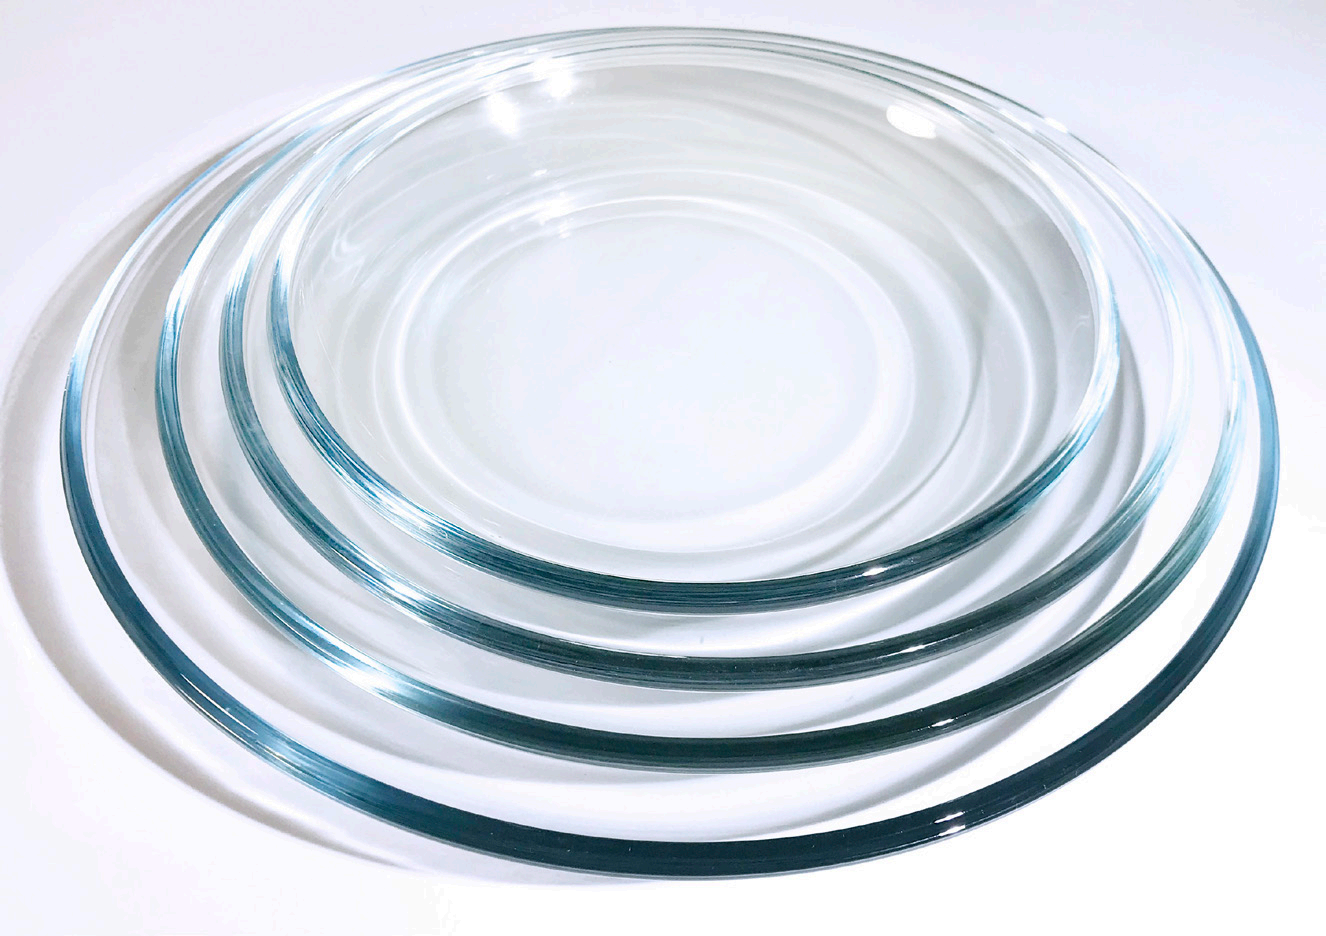 Glass plates for dinner